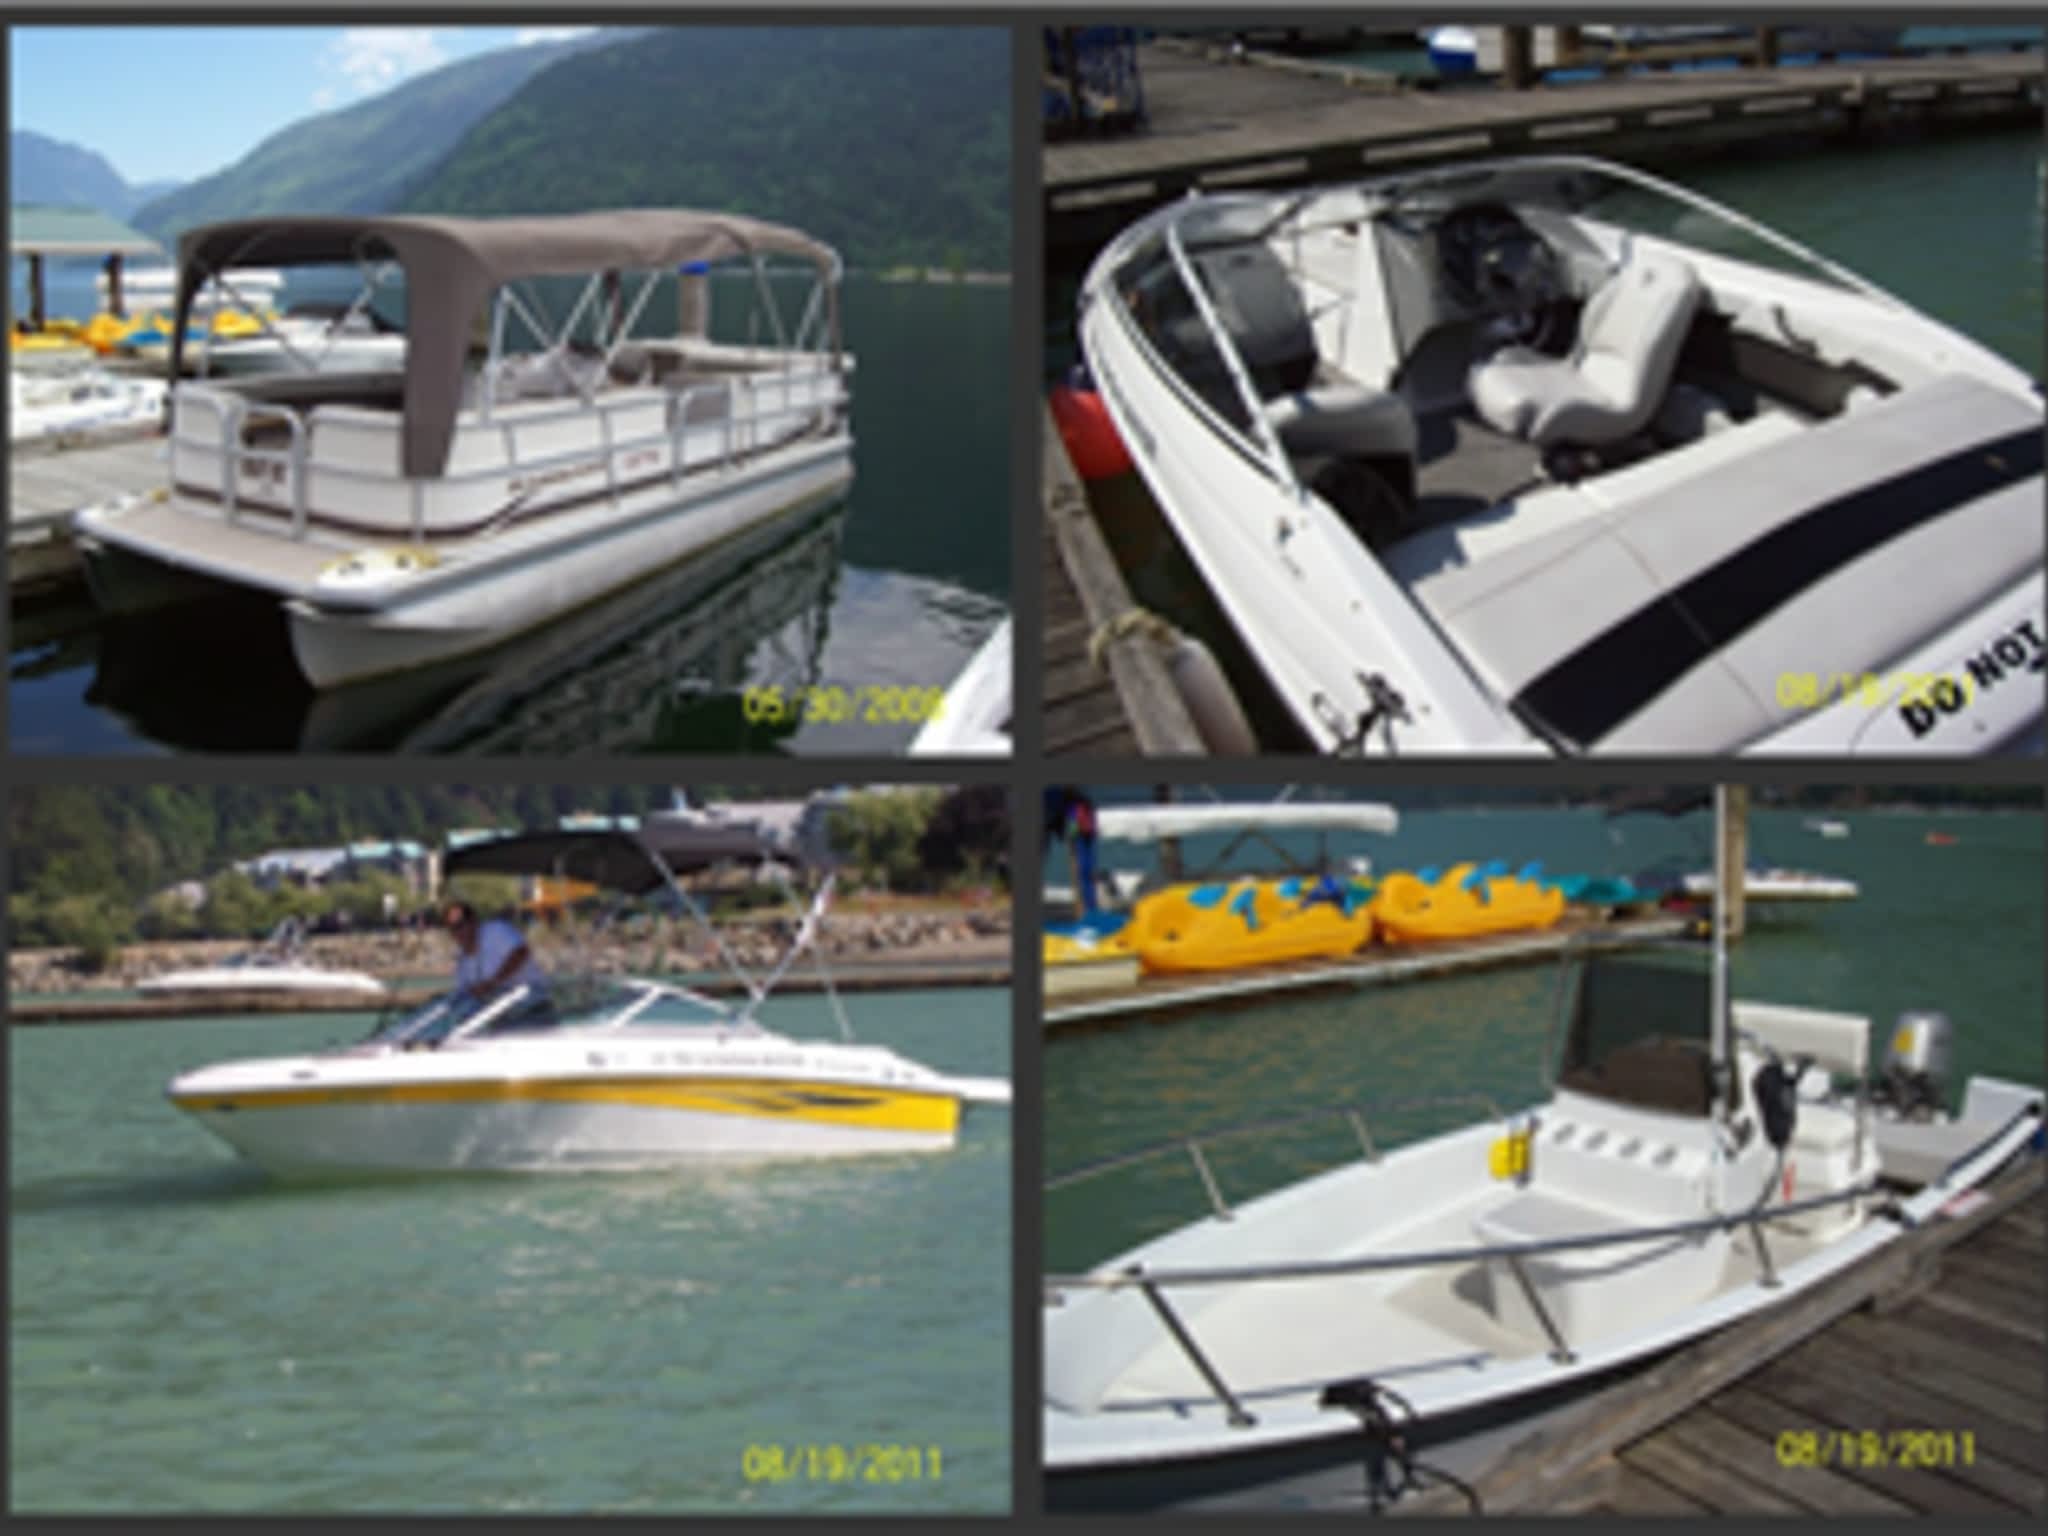 photo Killer's Cove Boat Rentals Ltd